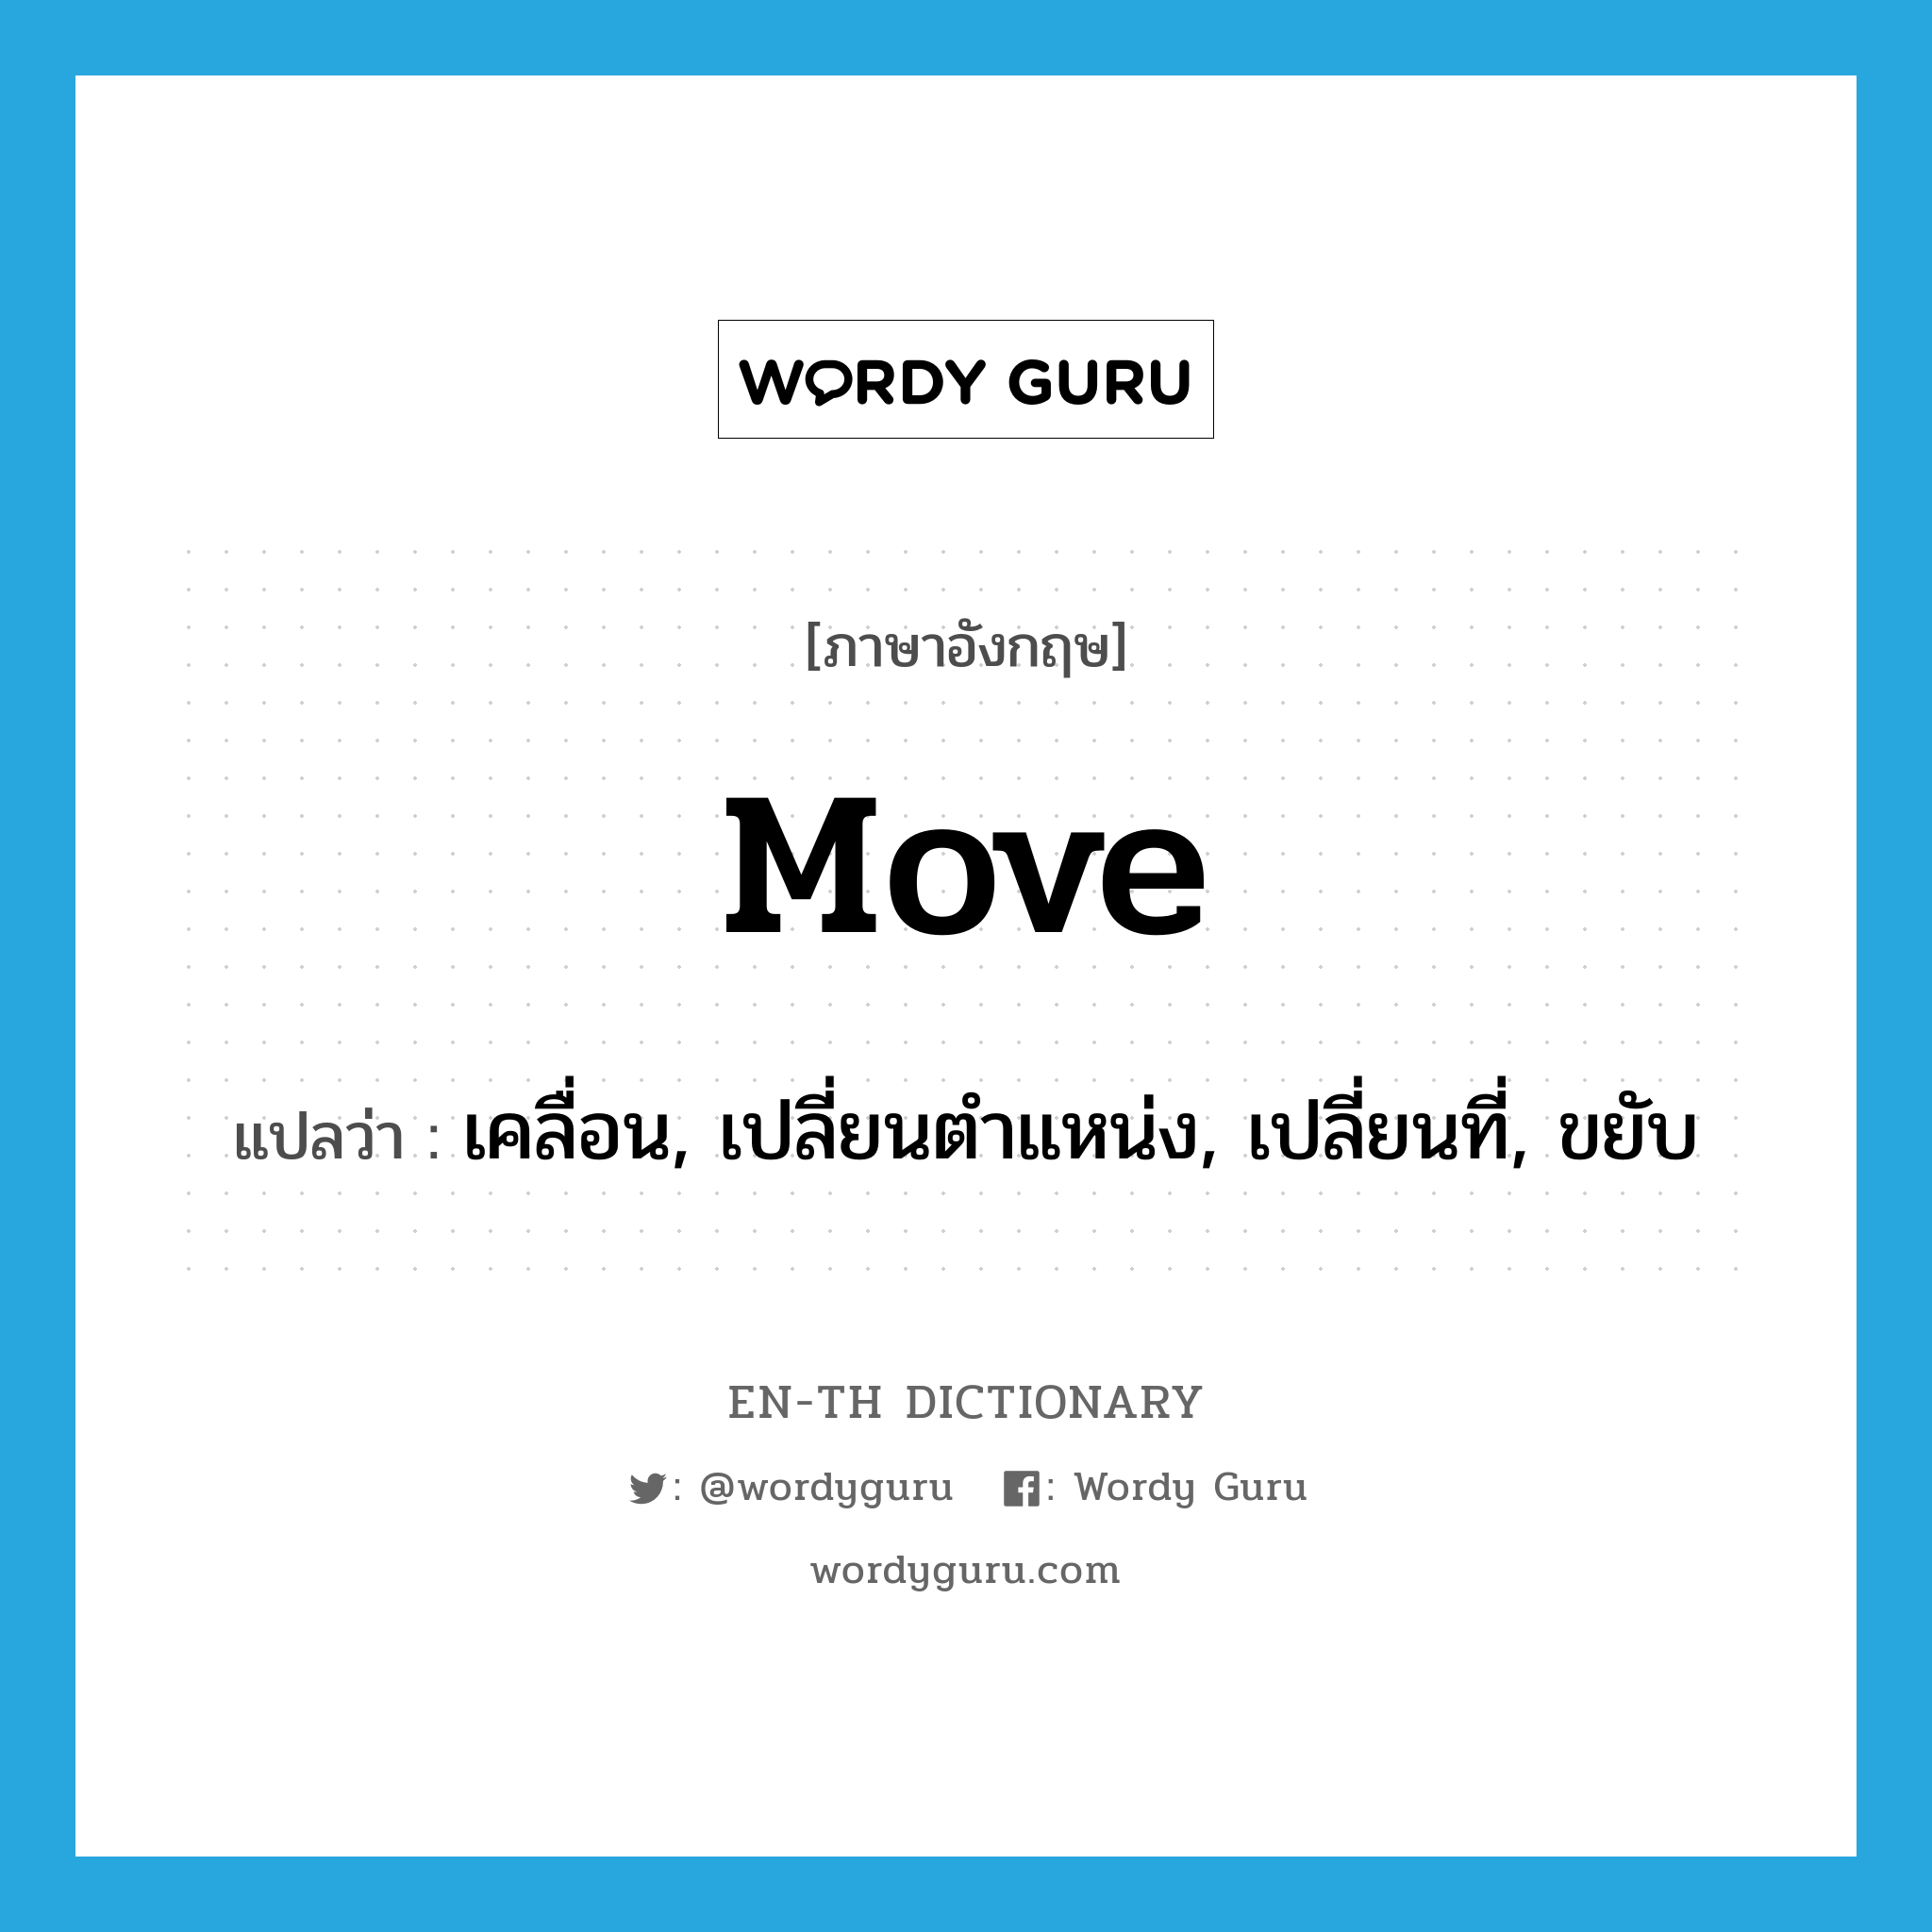 เคลื่อน, เปลี่ยนตำแหน่ง, เปลี่ยนที่, ขยับ ภาษาอังกฤษ?, คำศัพท์ภาษาอังกฤษ เคลื่อน, เปลี่ยนตำแหน่ง, เปลี่ยนที่, ขยับ แปลว่า move ประเภท VI หมวด VI